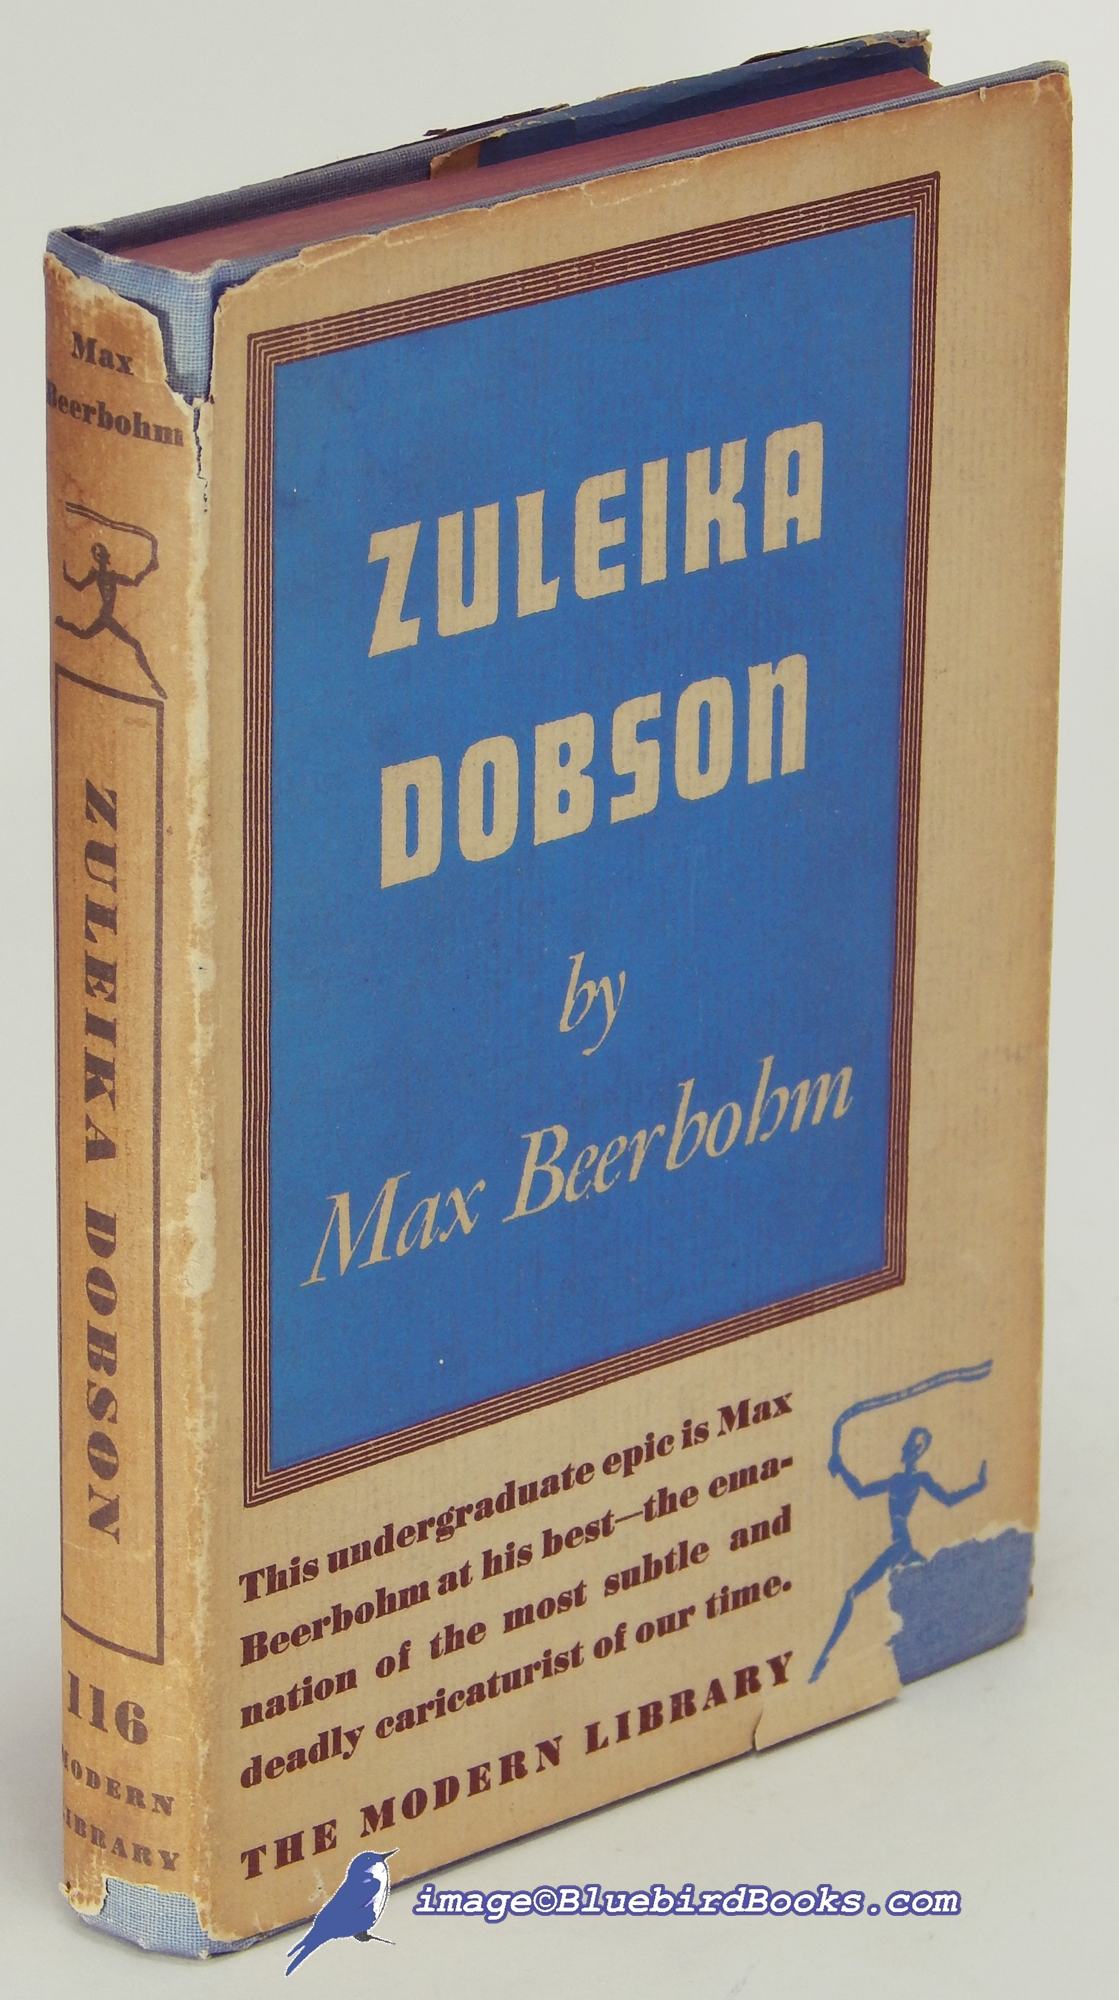 BEERBOHM, MAX - Zuleika Dobson (Modern Library #116. 2)